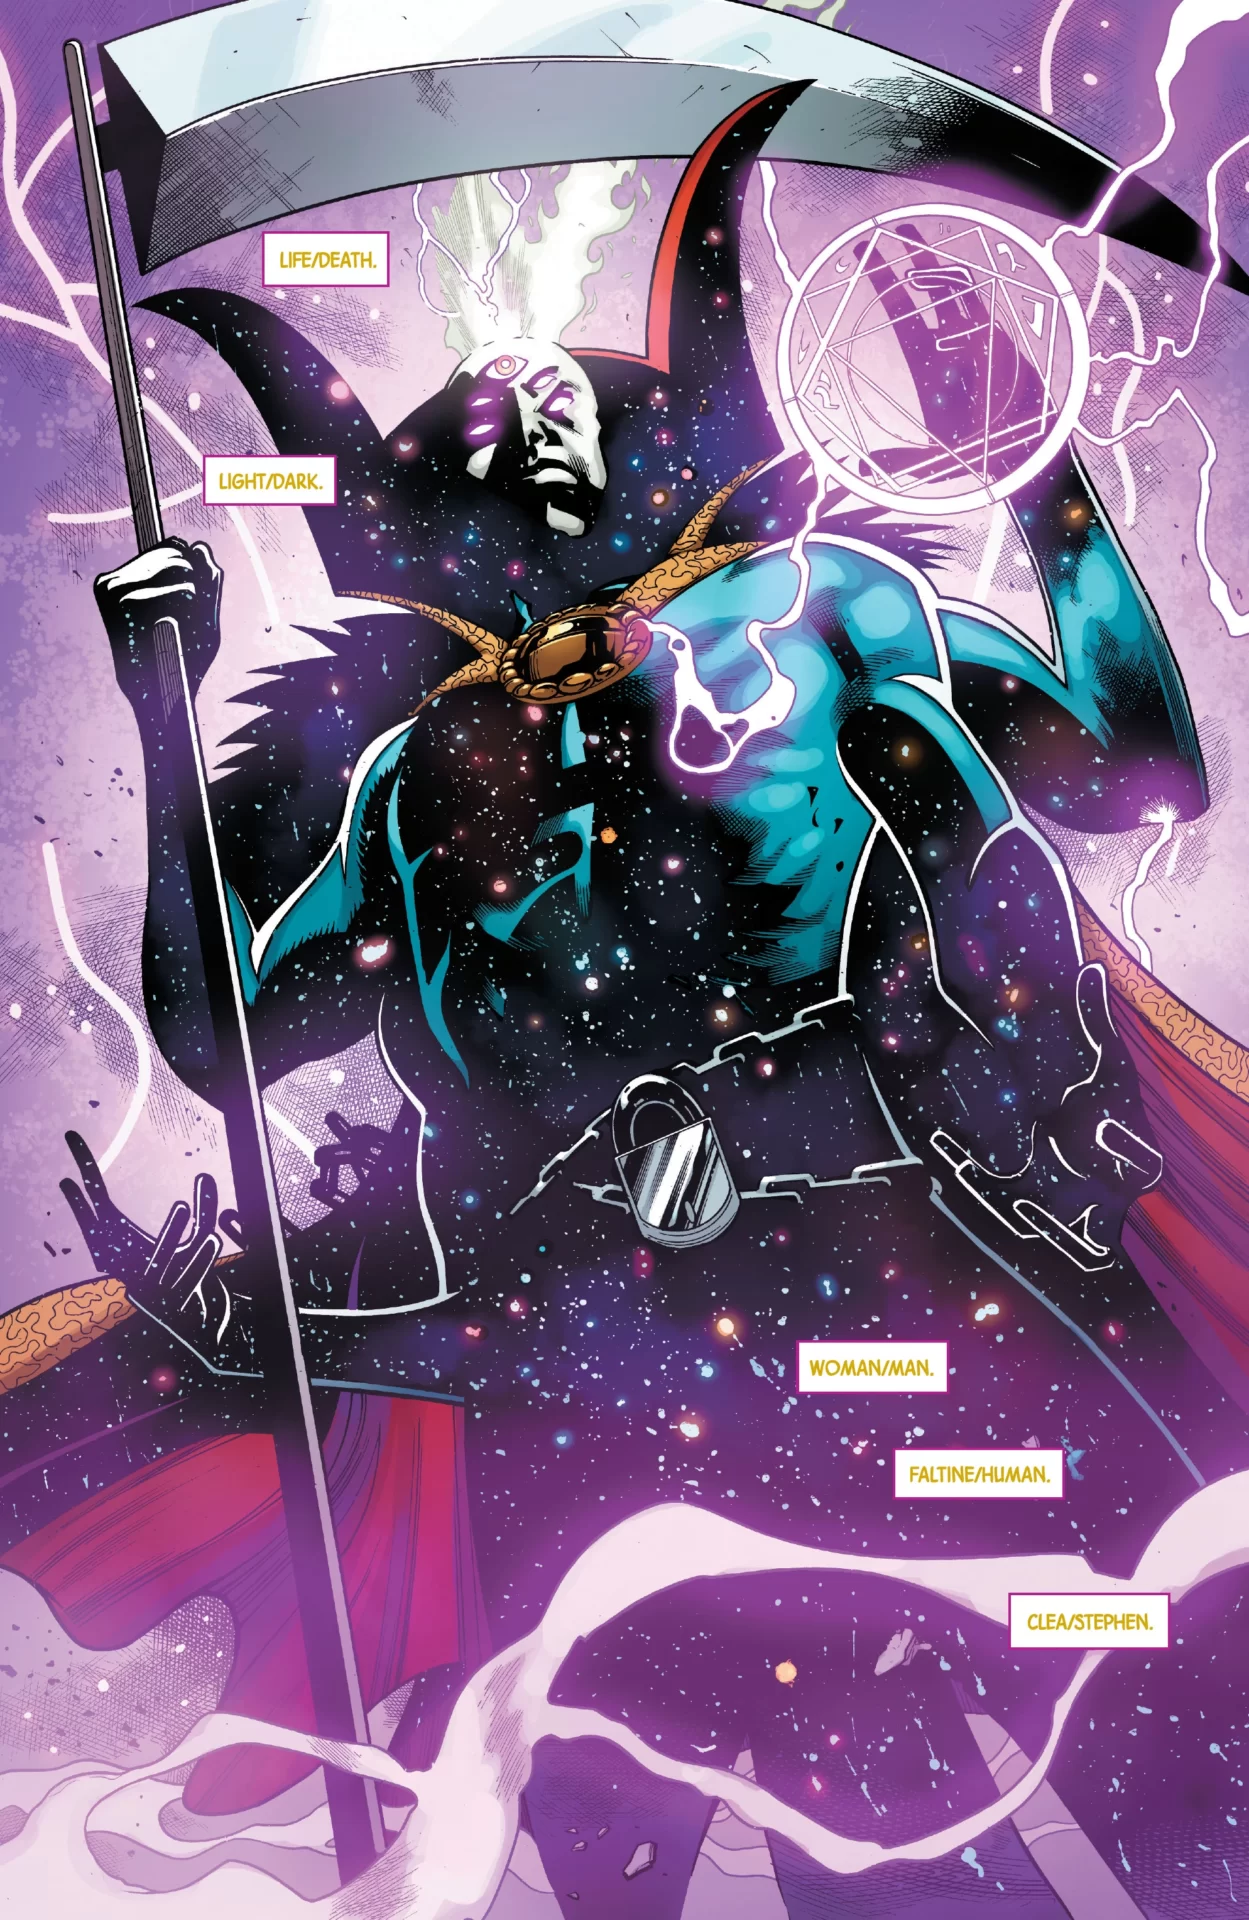 Doutor Estranho se tornou uma das entidades mais poderosas da Marvel